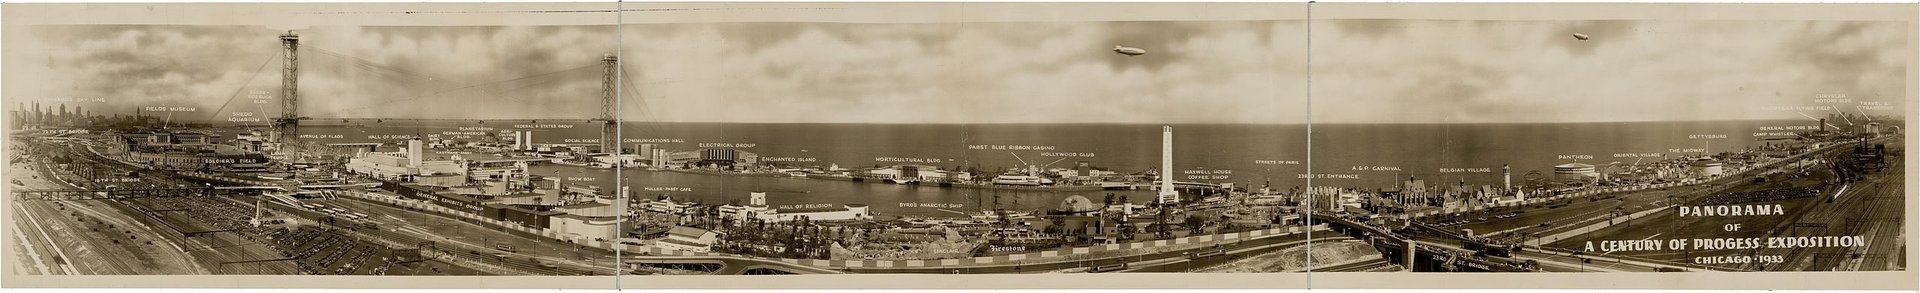 Panoramic view of the 1933 Century of Progress World's Fair